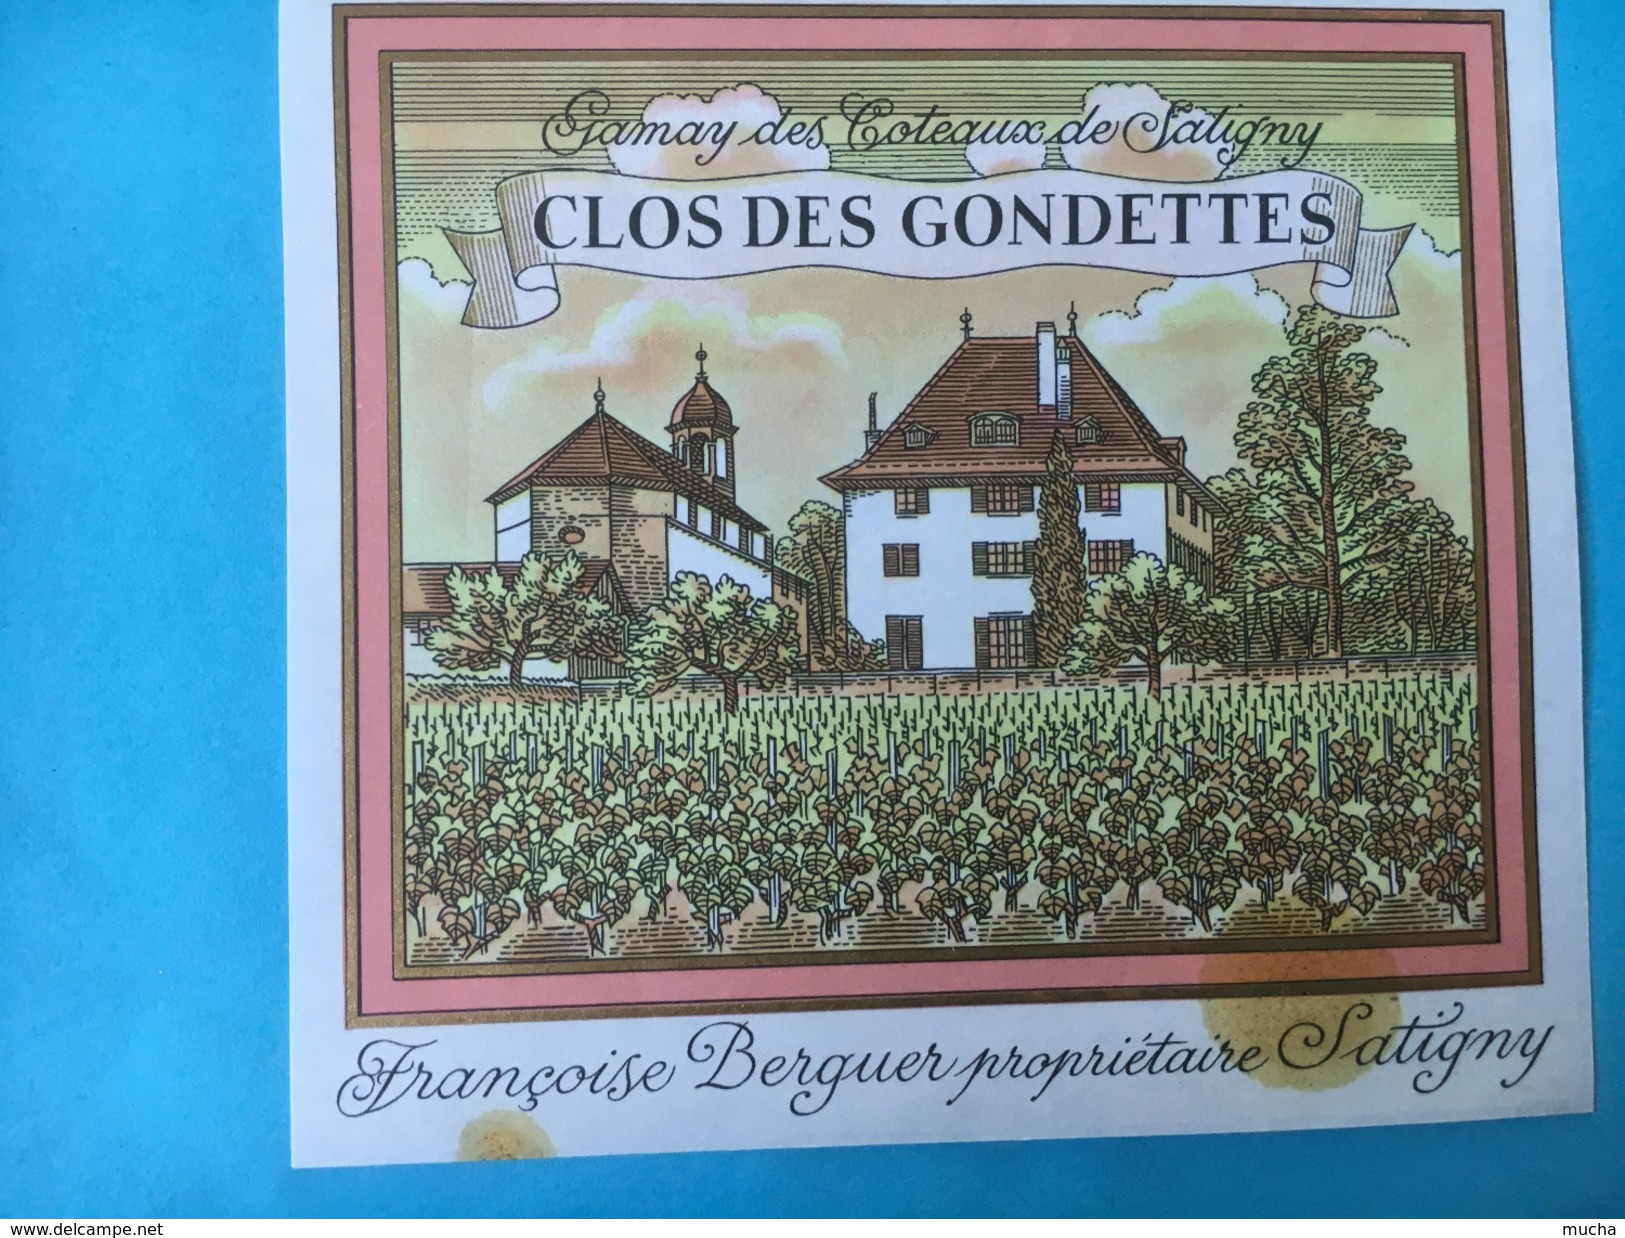 1719 - Suisse Genève Gamay Des Coteaux De Satigny Clos Des Gondettes - Fonduta